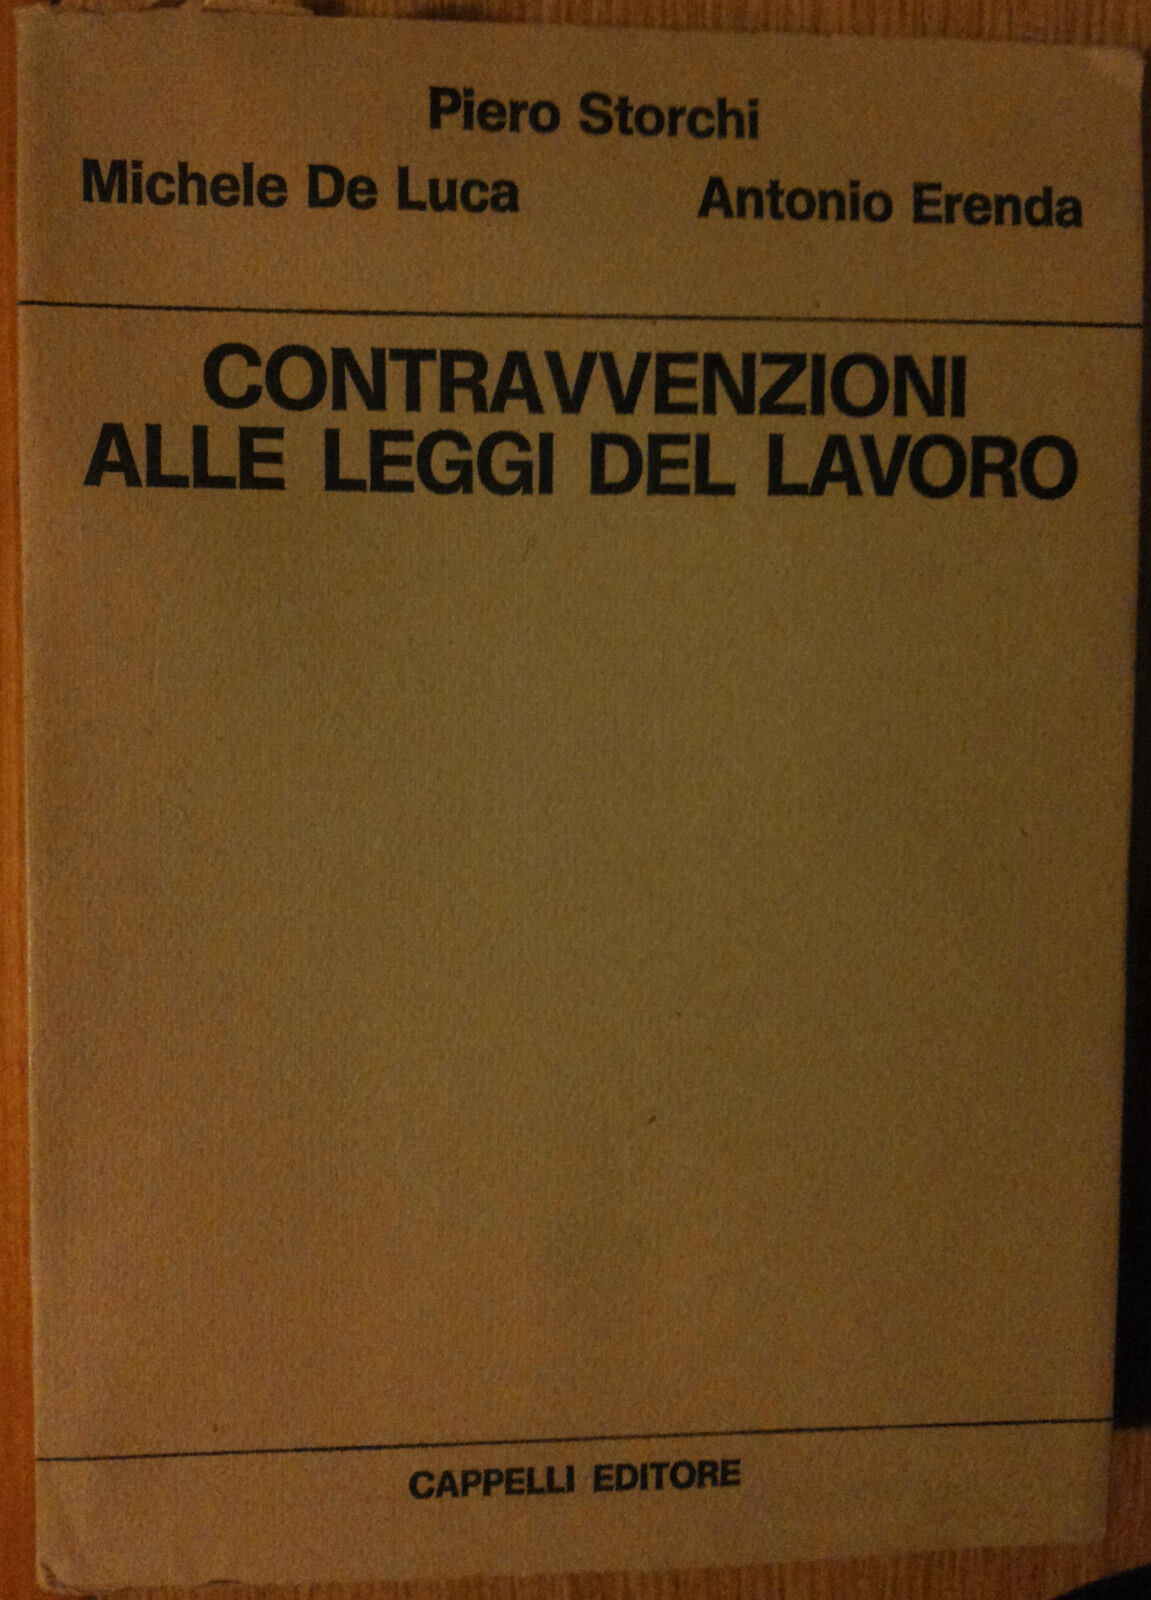 Contravvenzioni alle leggi del lavoro - AA.VV. - Cappelli Editore,1971 - R